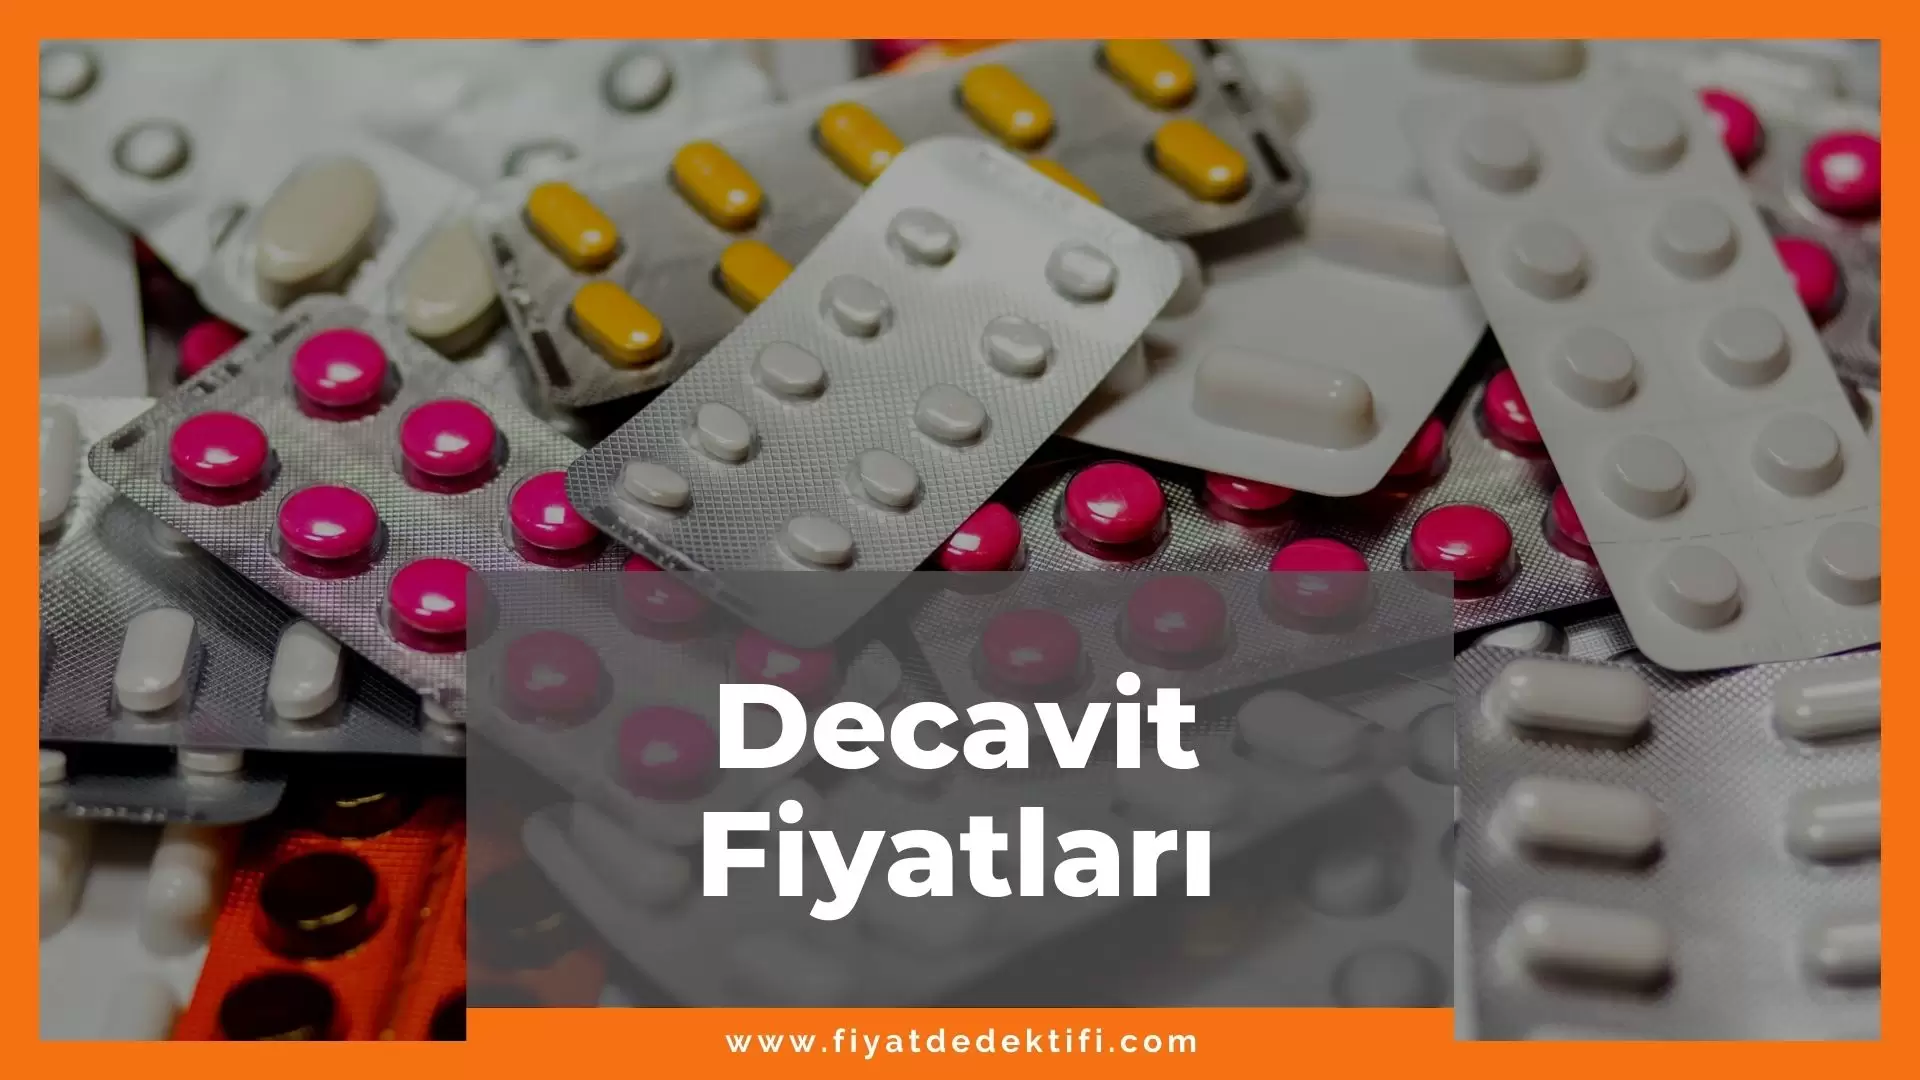 Decavit Fiyat 2021, Decavit Fiyatı, Decavit Pronatal Fiyatı, decavit zamlandı mı, decavit zamlı fiyatı ne kadar oldu